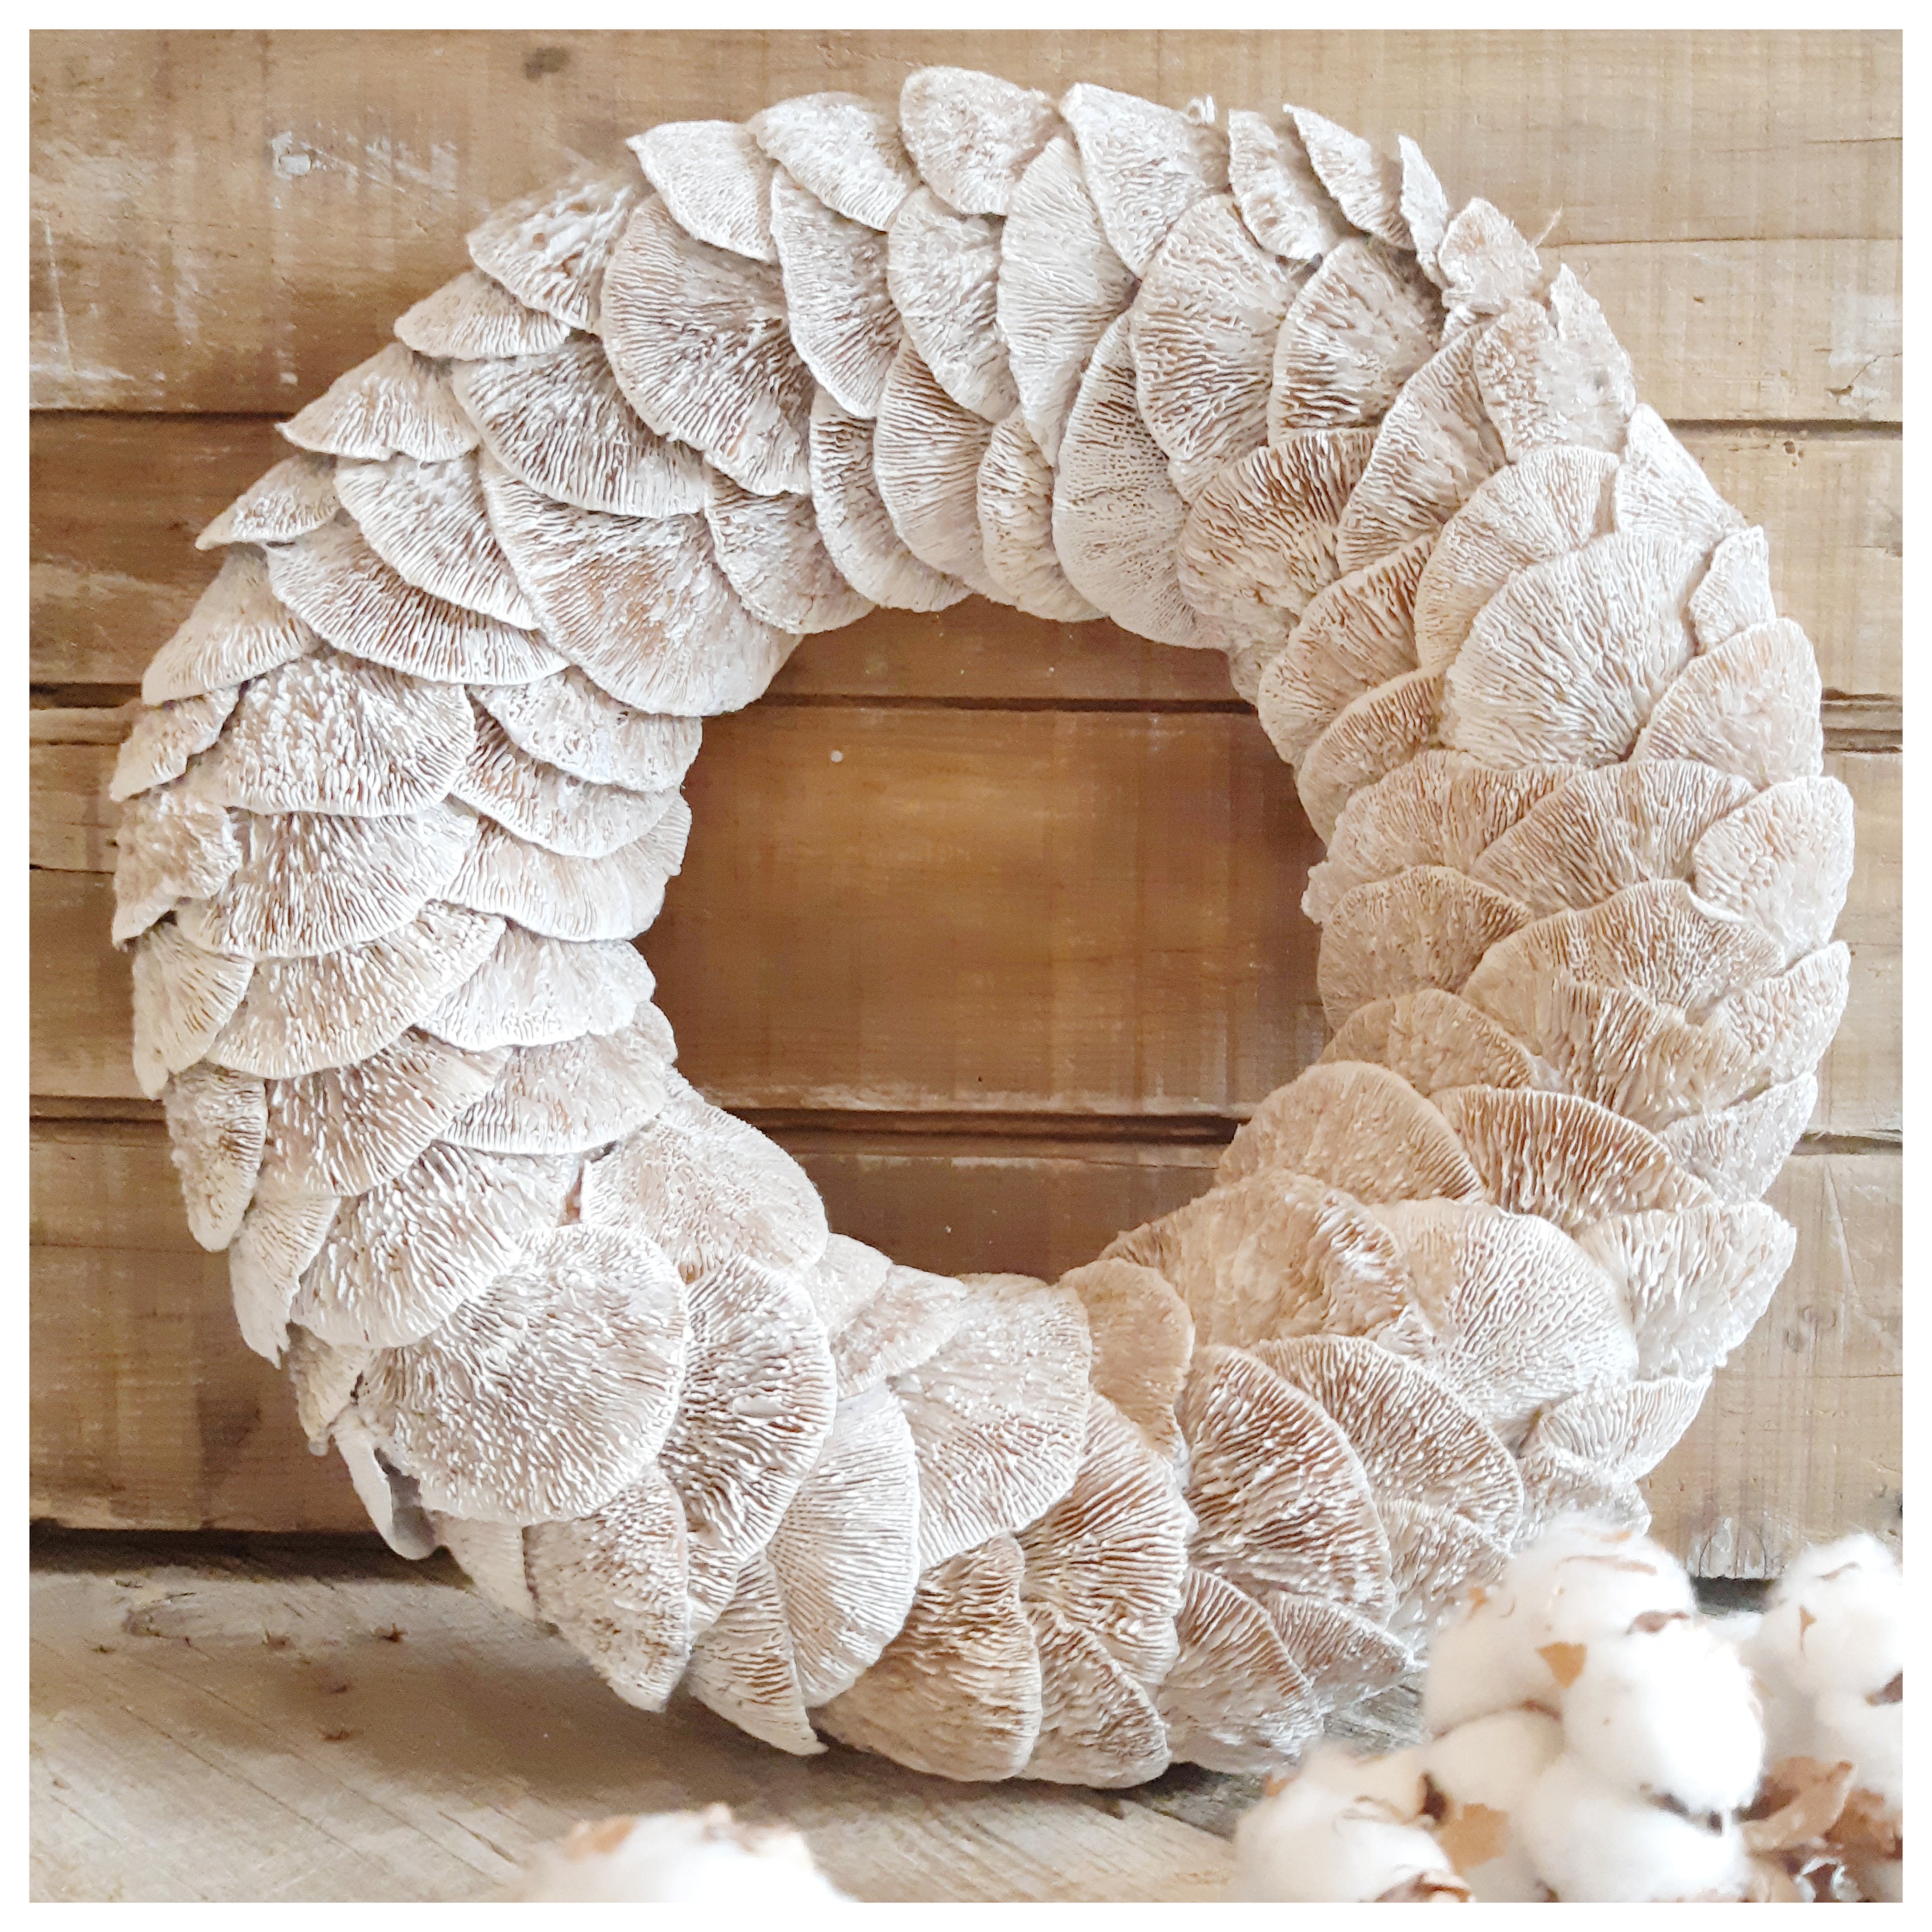 Mushroom Wreath 24" White washed